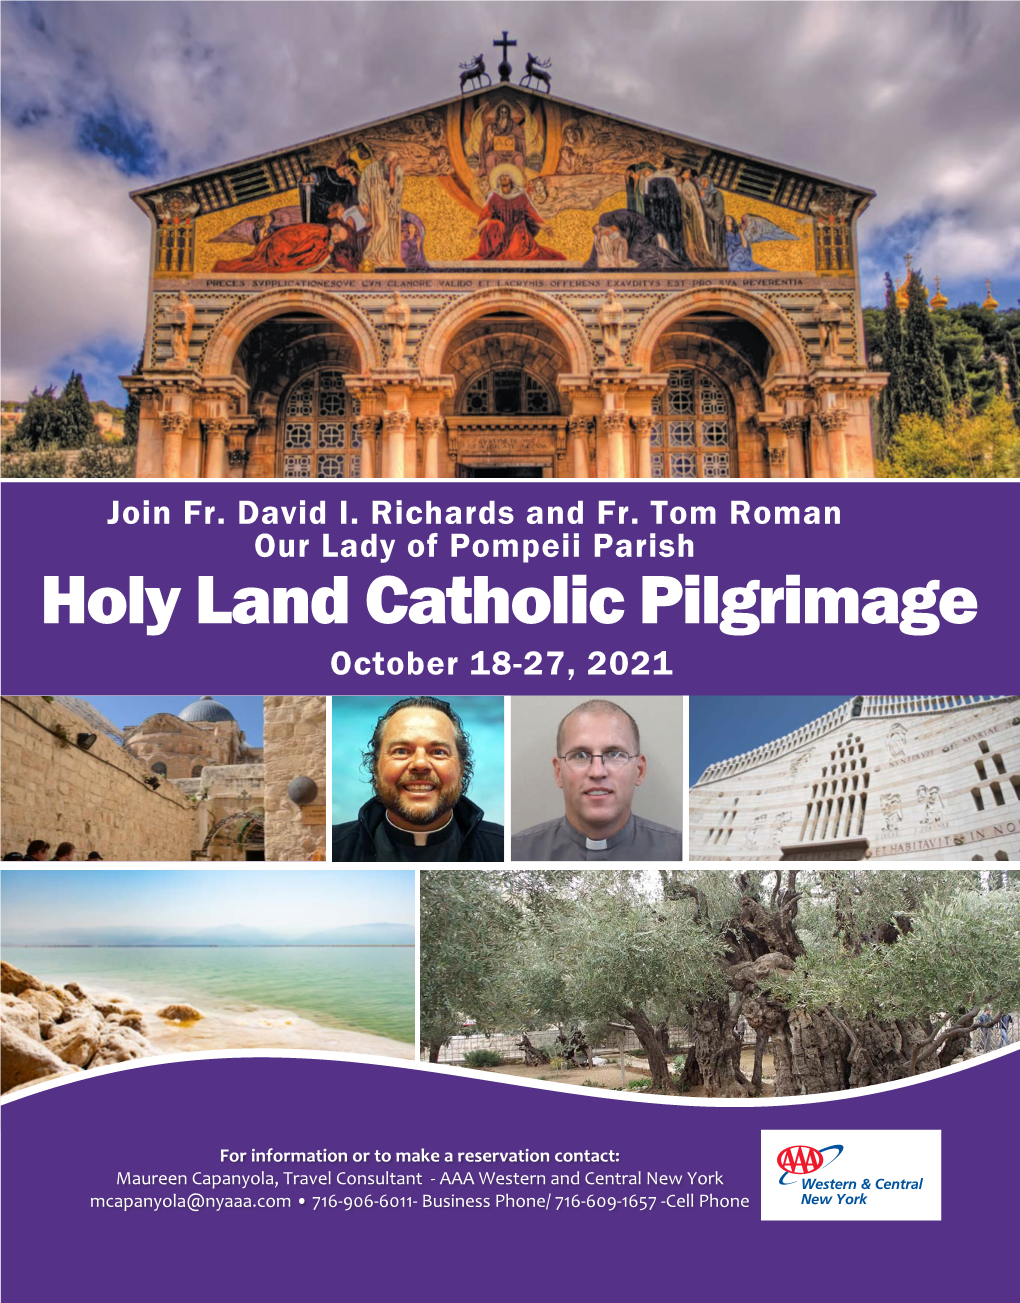 Holy Land Catholic Pilgrimage October 18-27, 2021